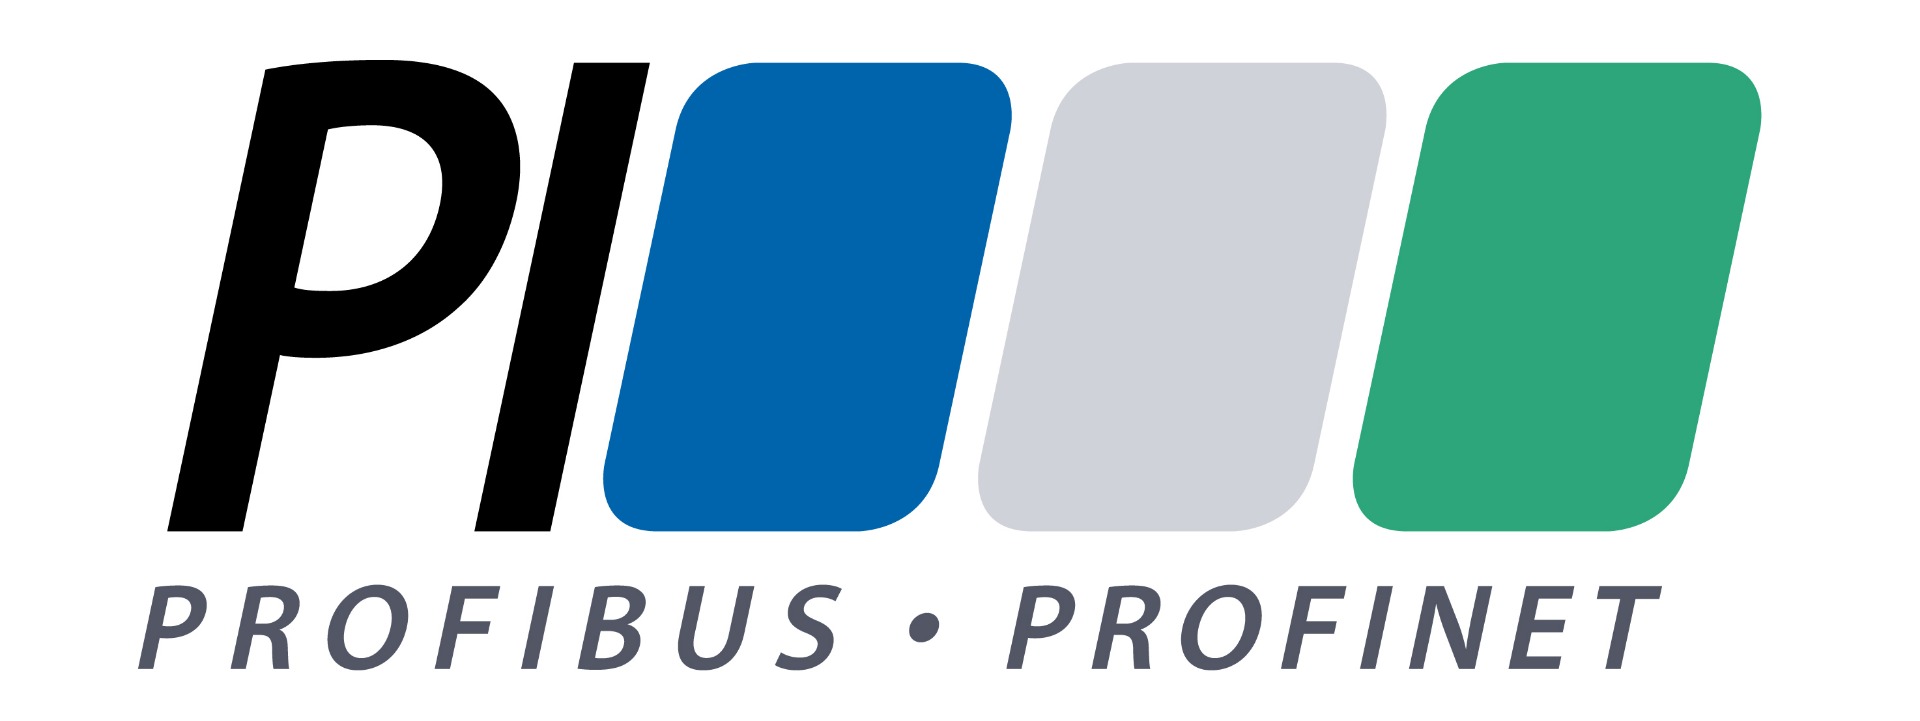 Profinet-Profibus-Logo